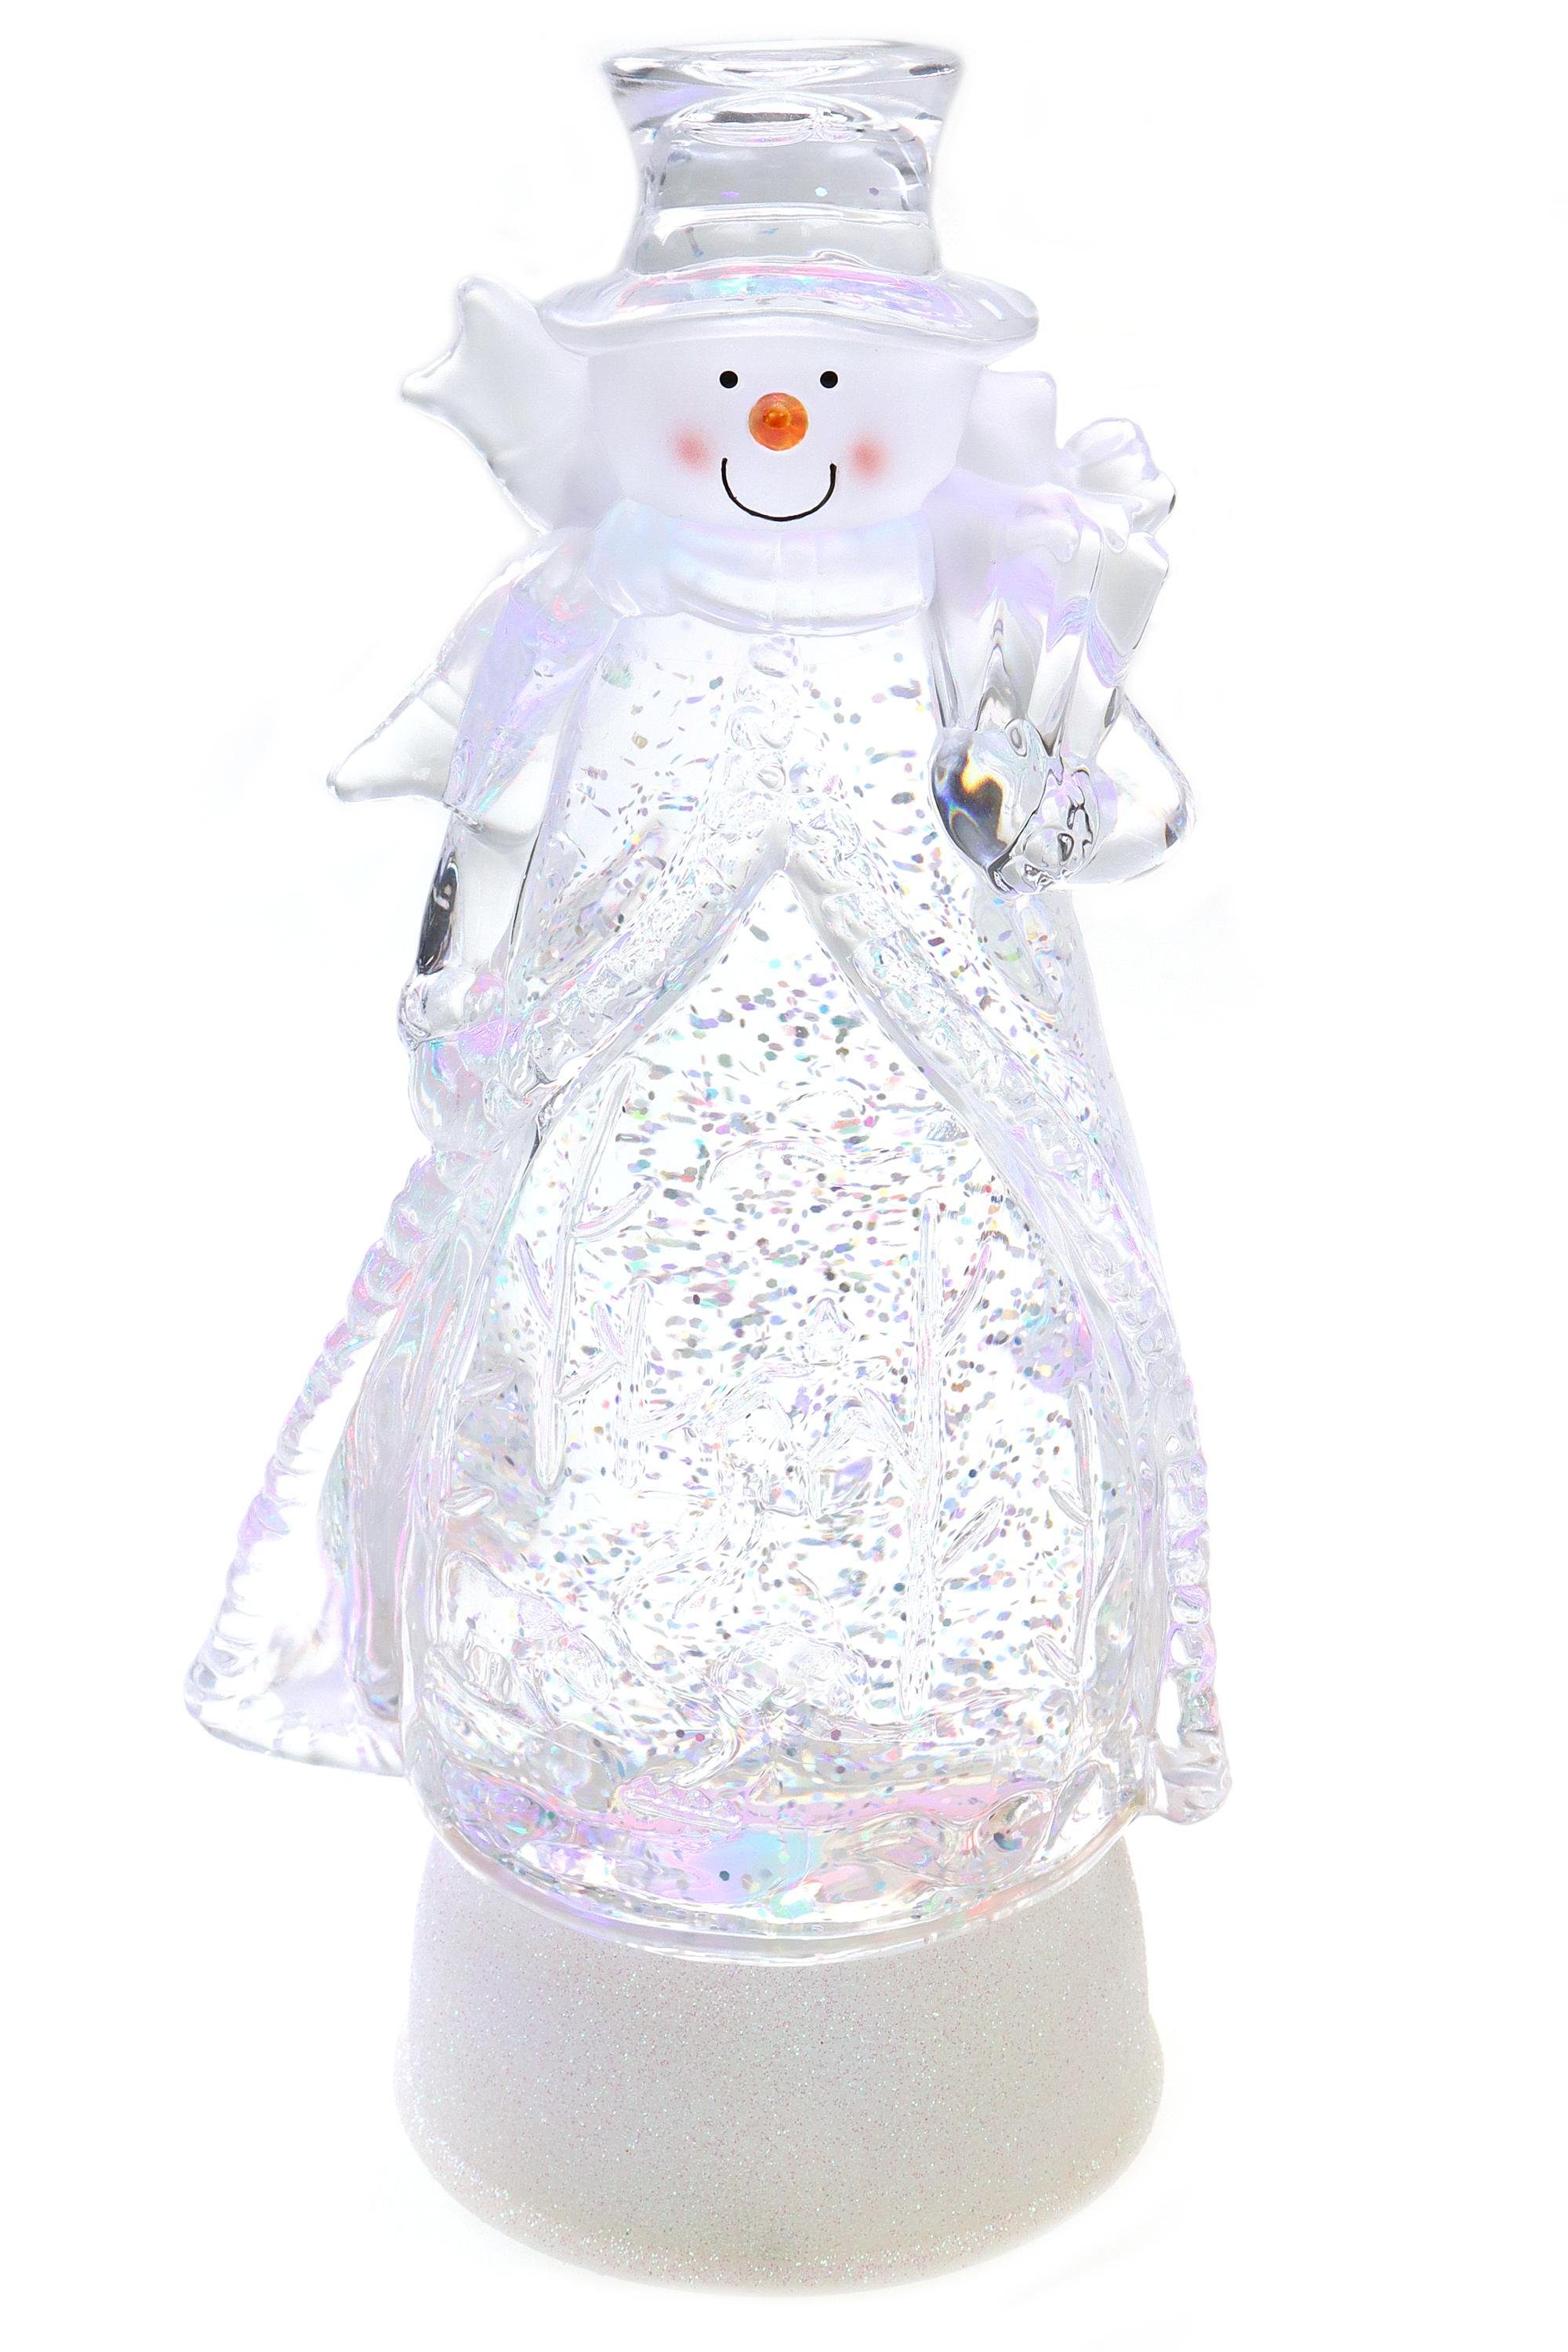 ELLUG Schneekugel Schneekugel mit Regenbogen LED Glitzerantrieb als Weihnachtsdeko Schneemann